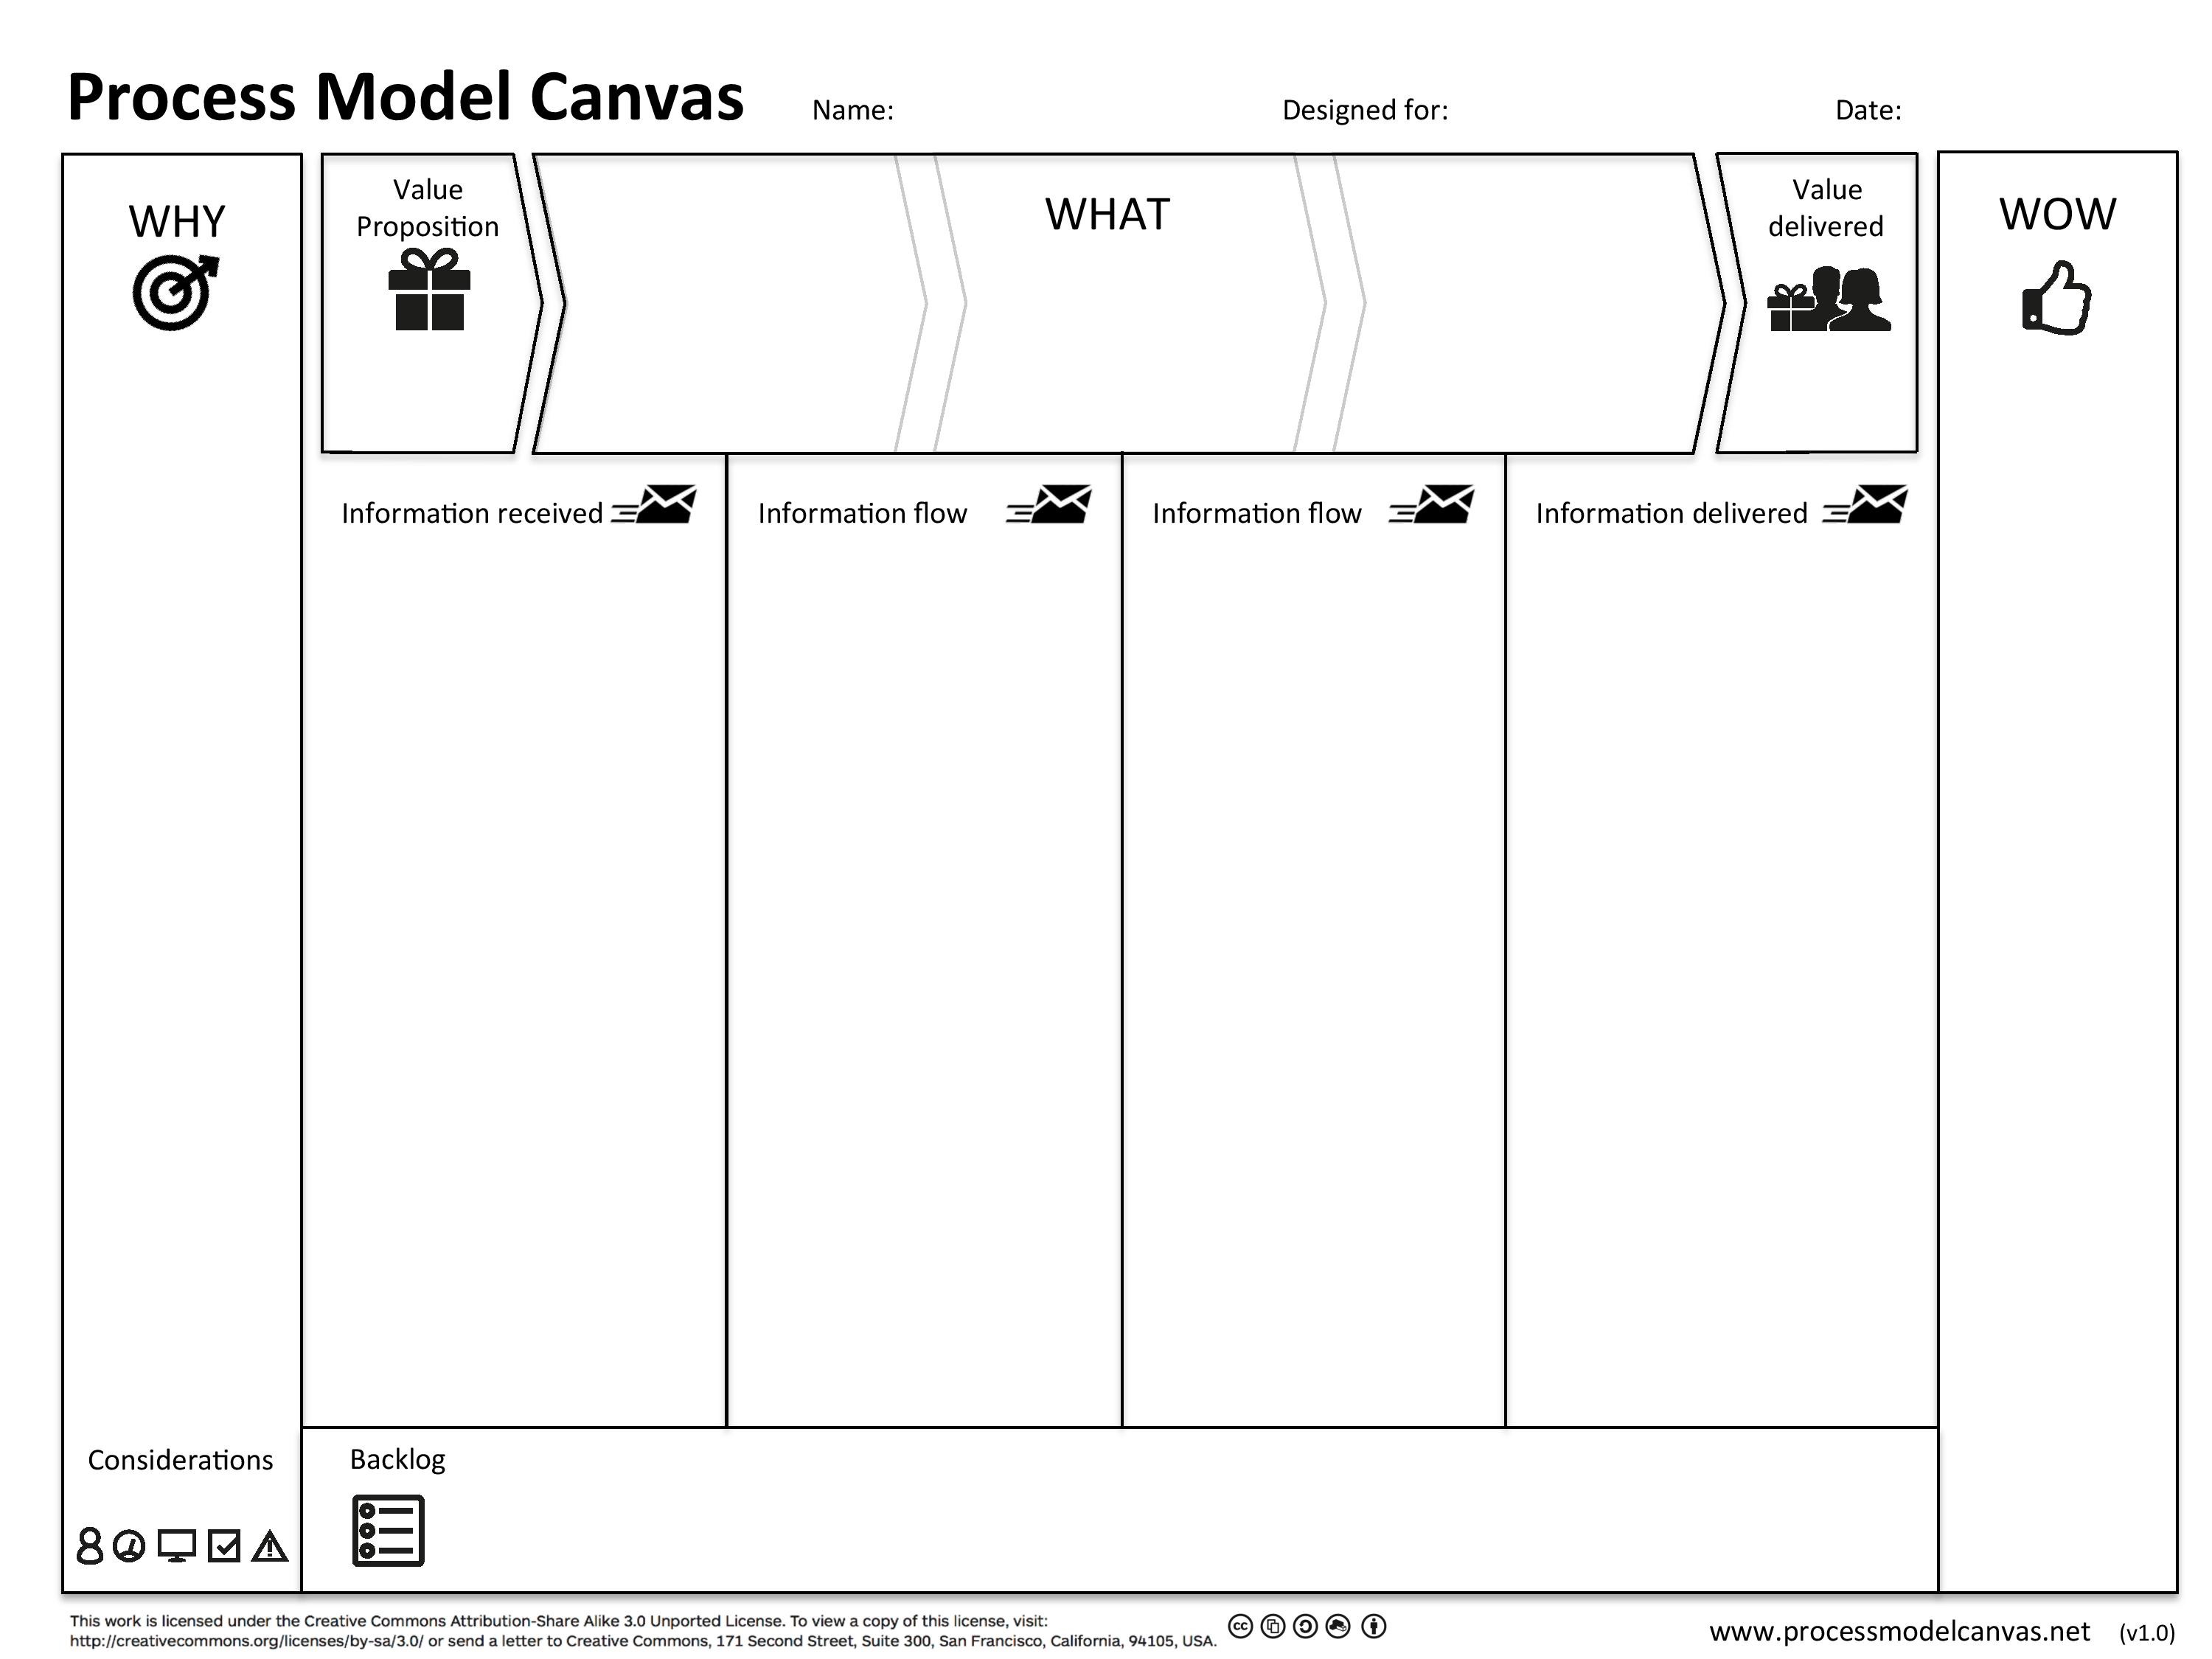 Process Model Canvas 1.1